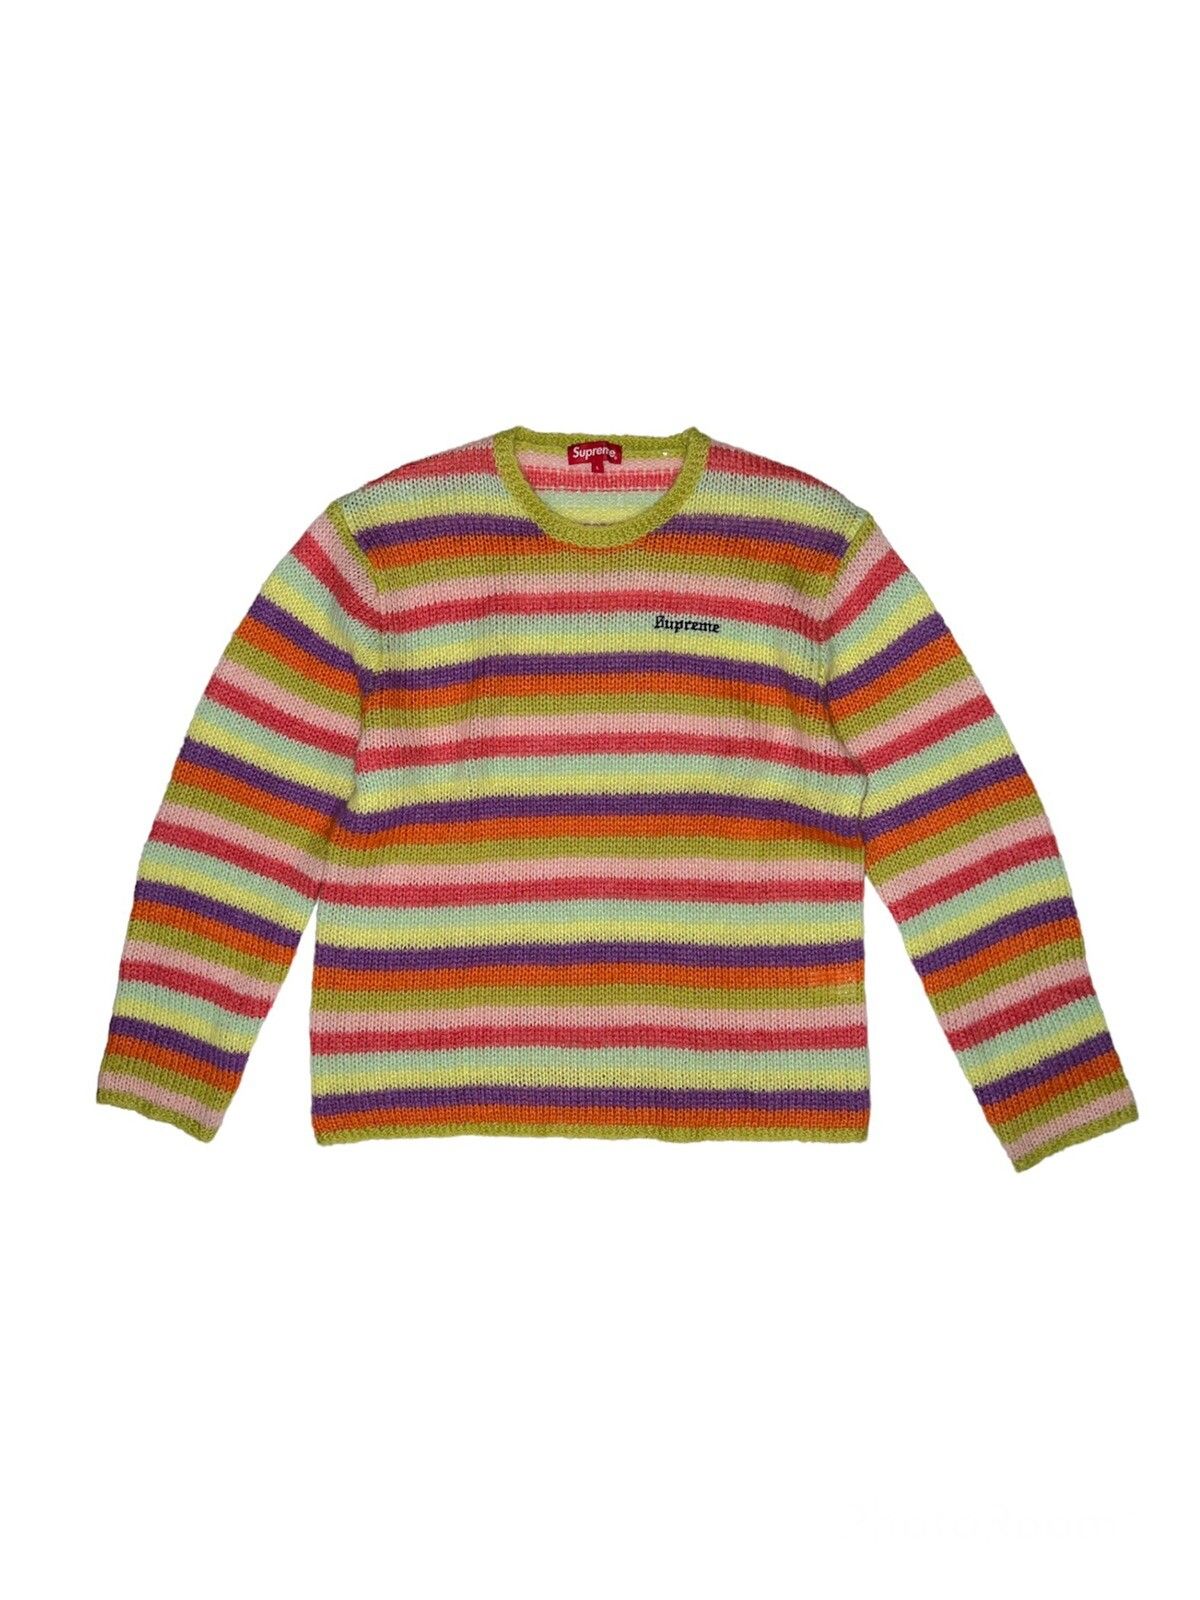 Supreme Supreme Stripe Mohair Sweater | Grailed